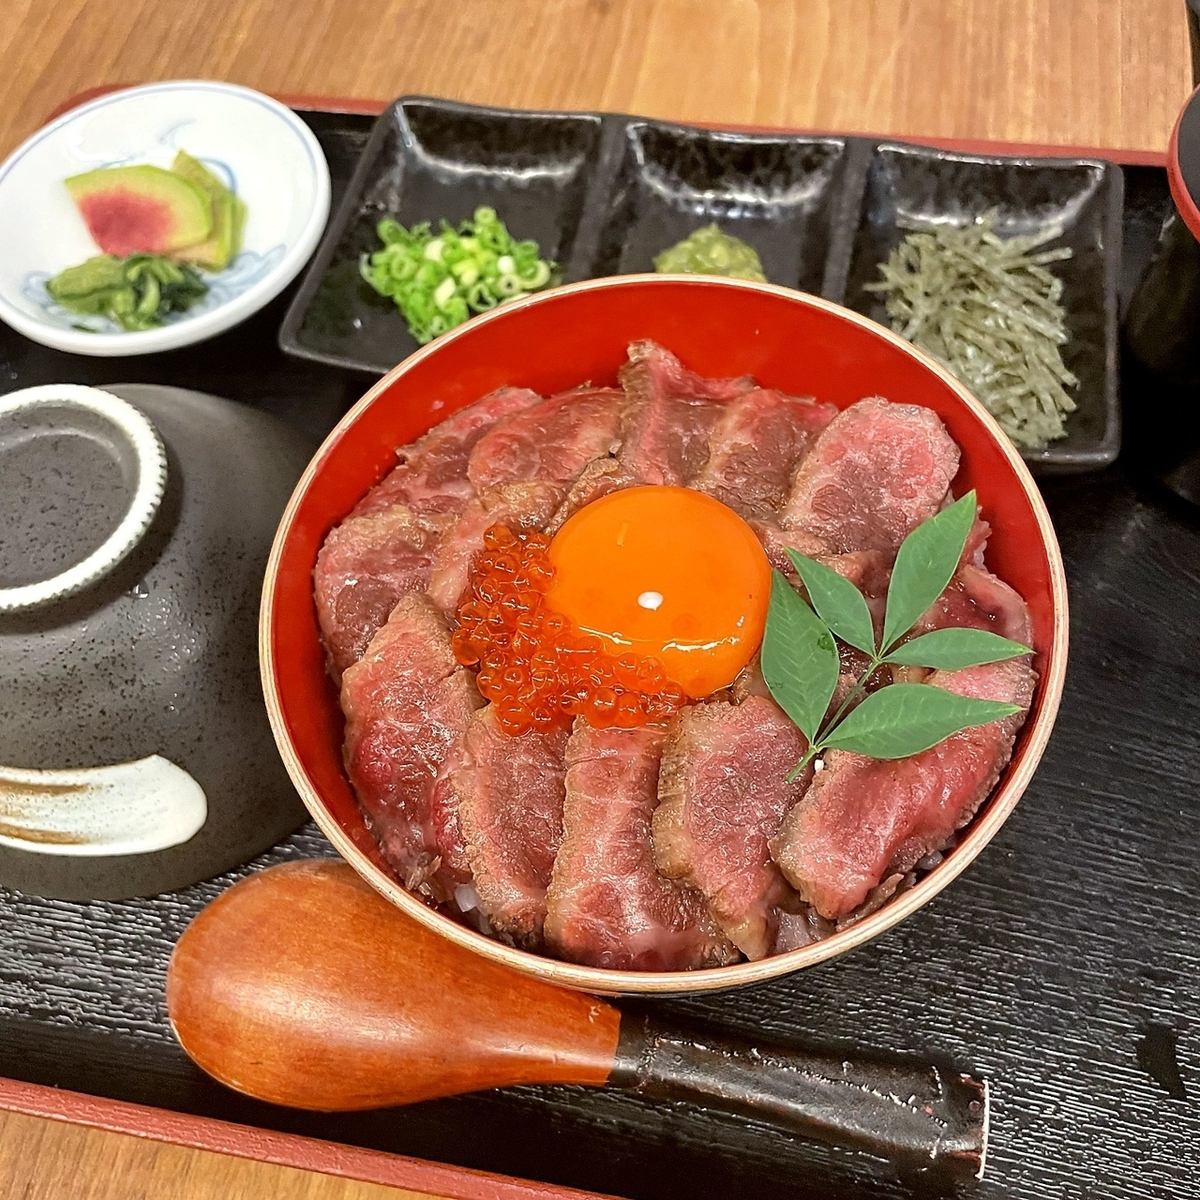 可以享用和牛、牡蛎的名产菜肴、日本酒、广岛铁板烧的餐厅。